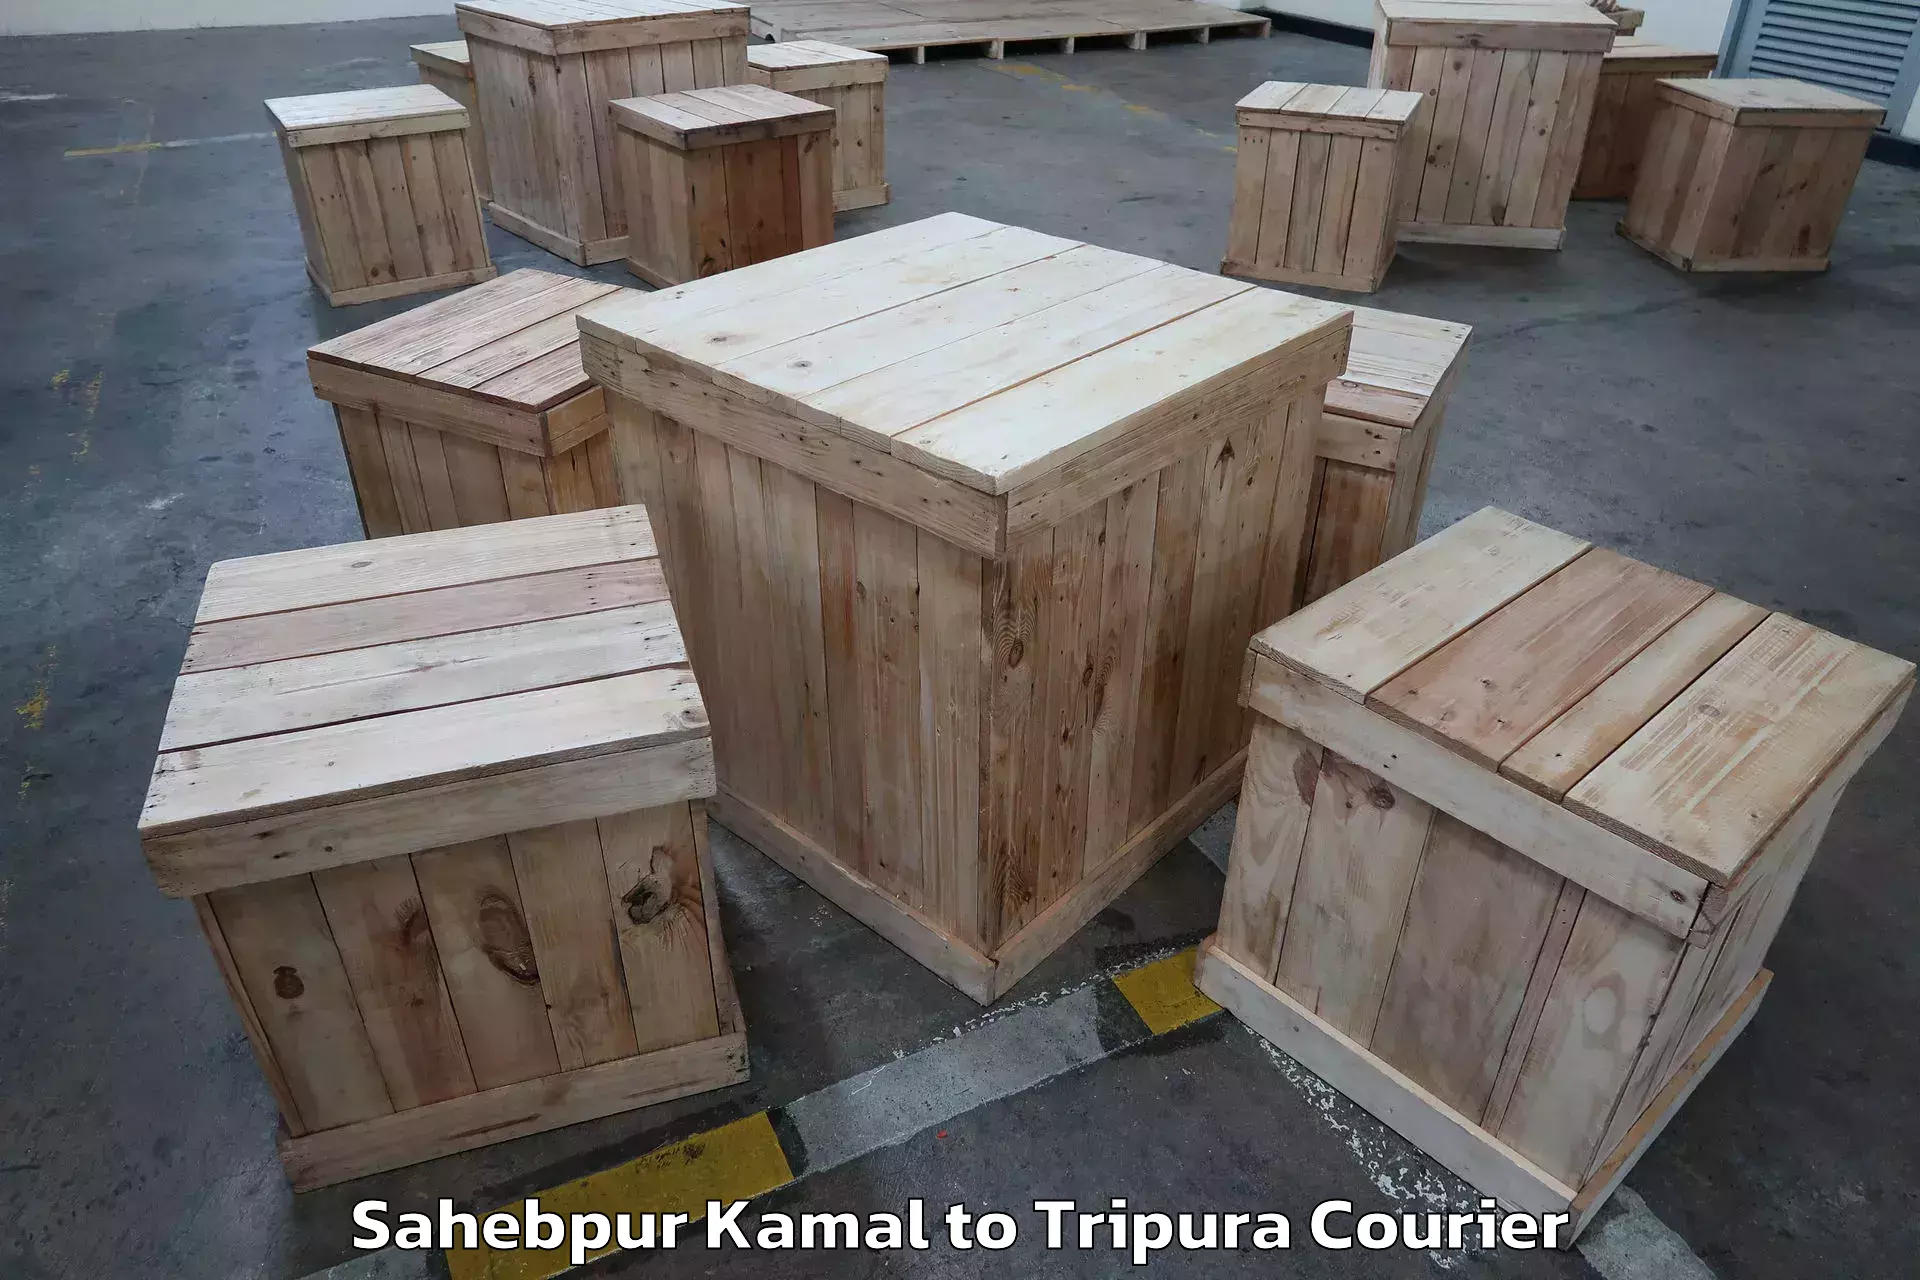 Expert goods movers Sahebpur Kamal to Amarpur